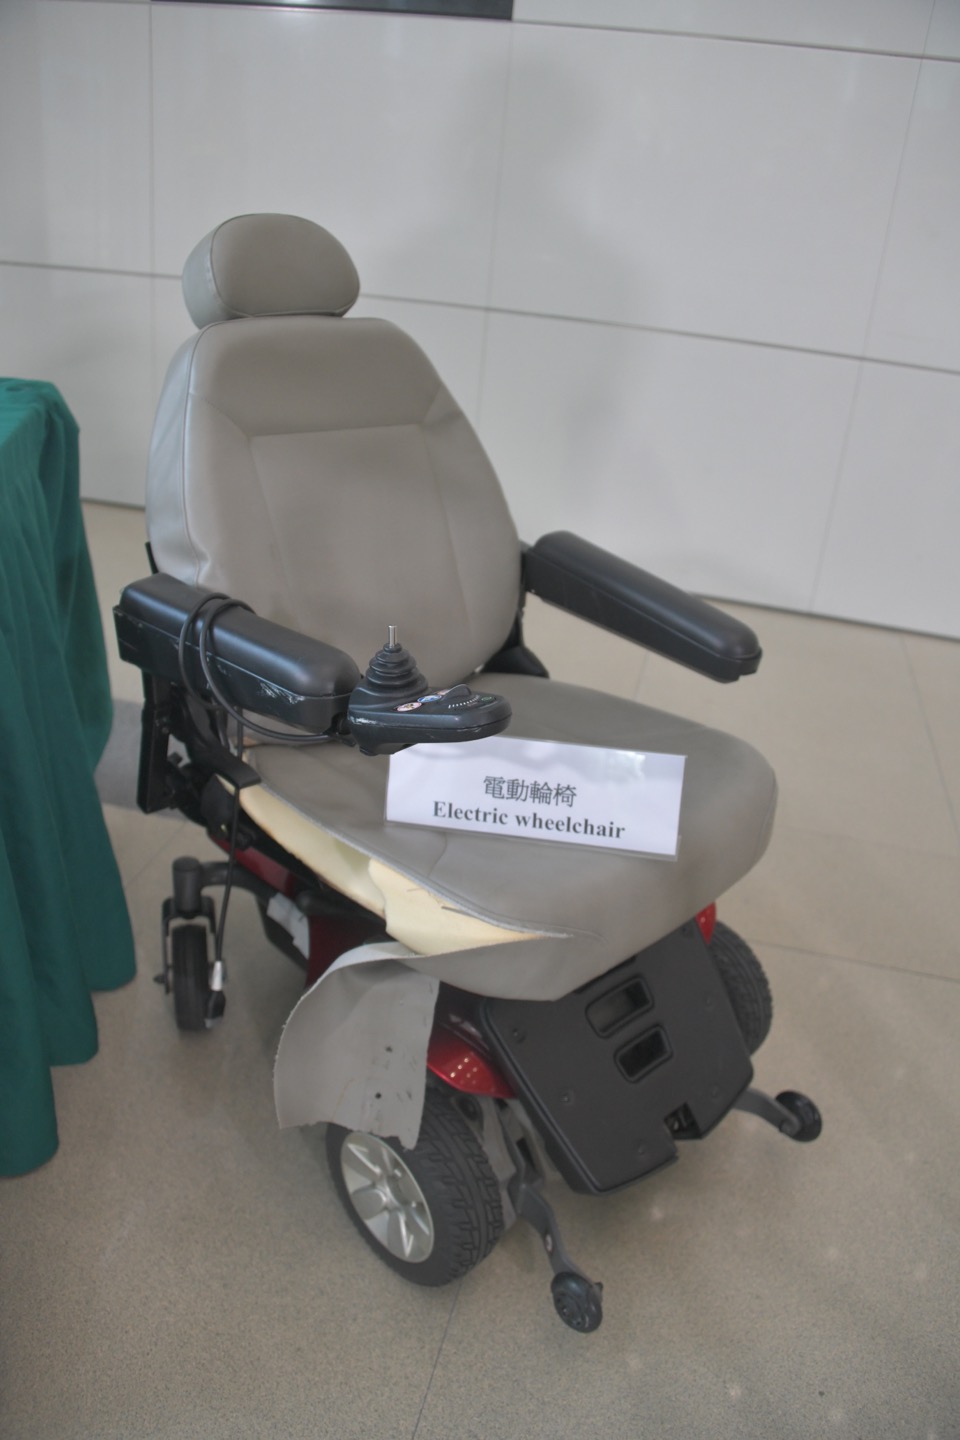 机场海关首次发现旅客利用寄舱电动轮椅藏毒。杨伟亨摄